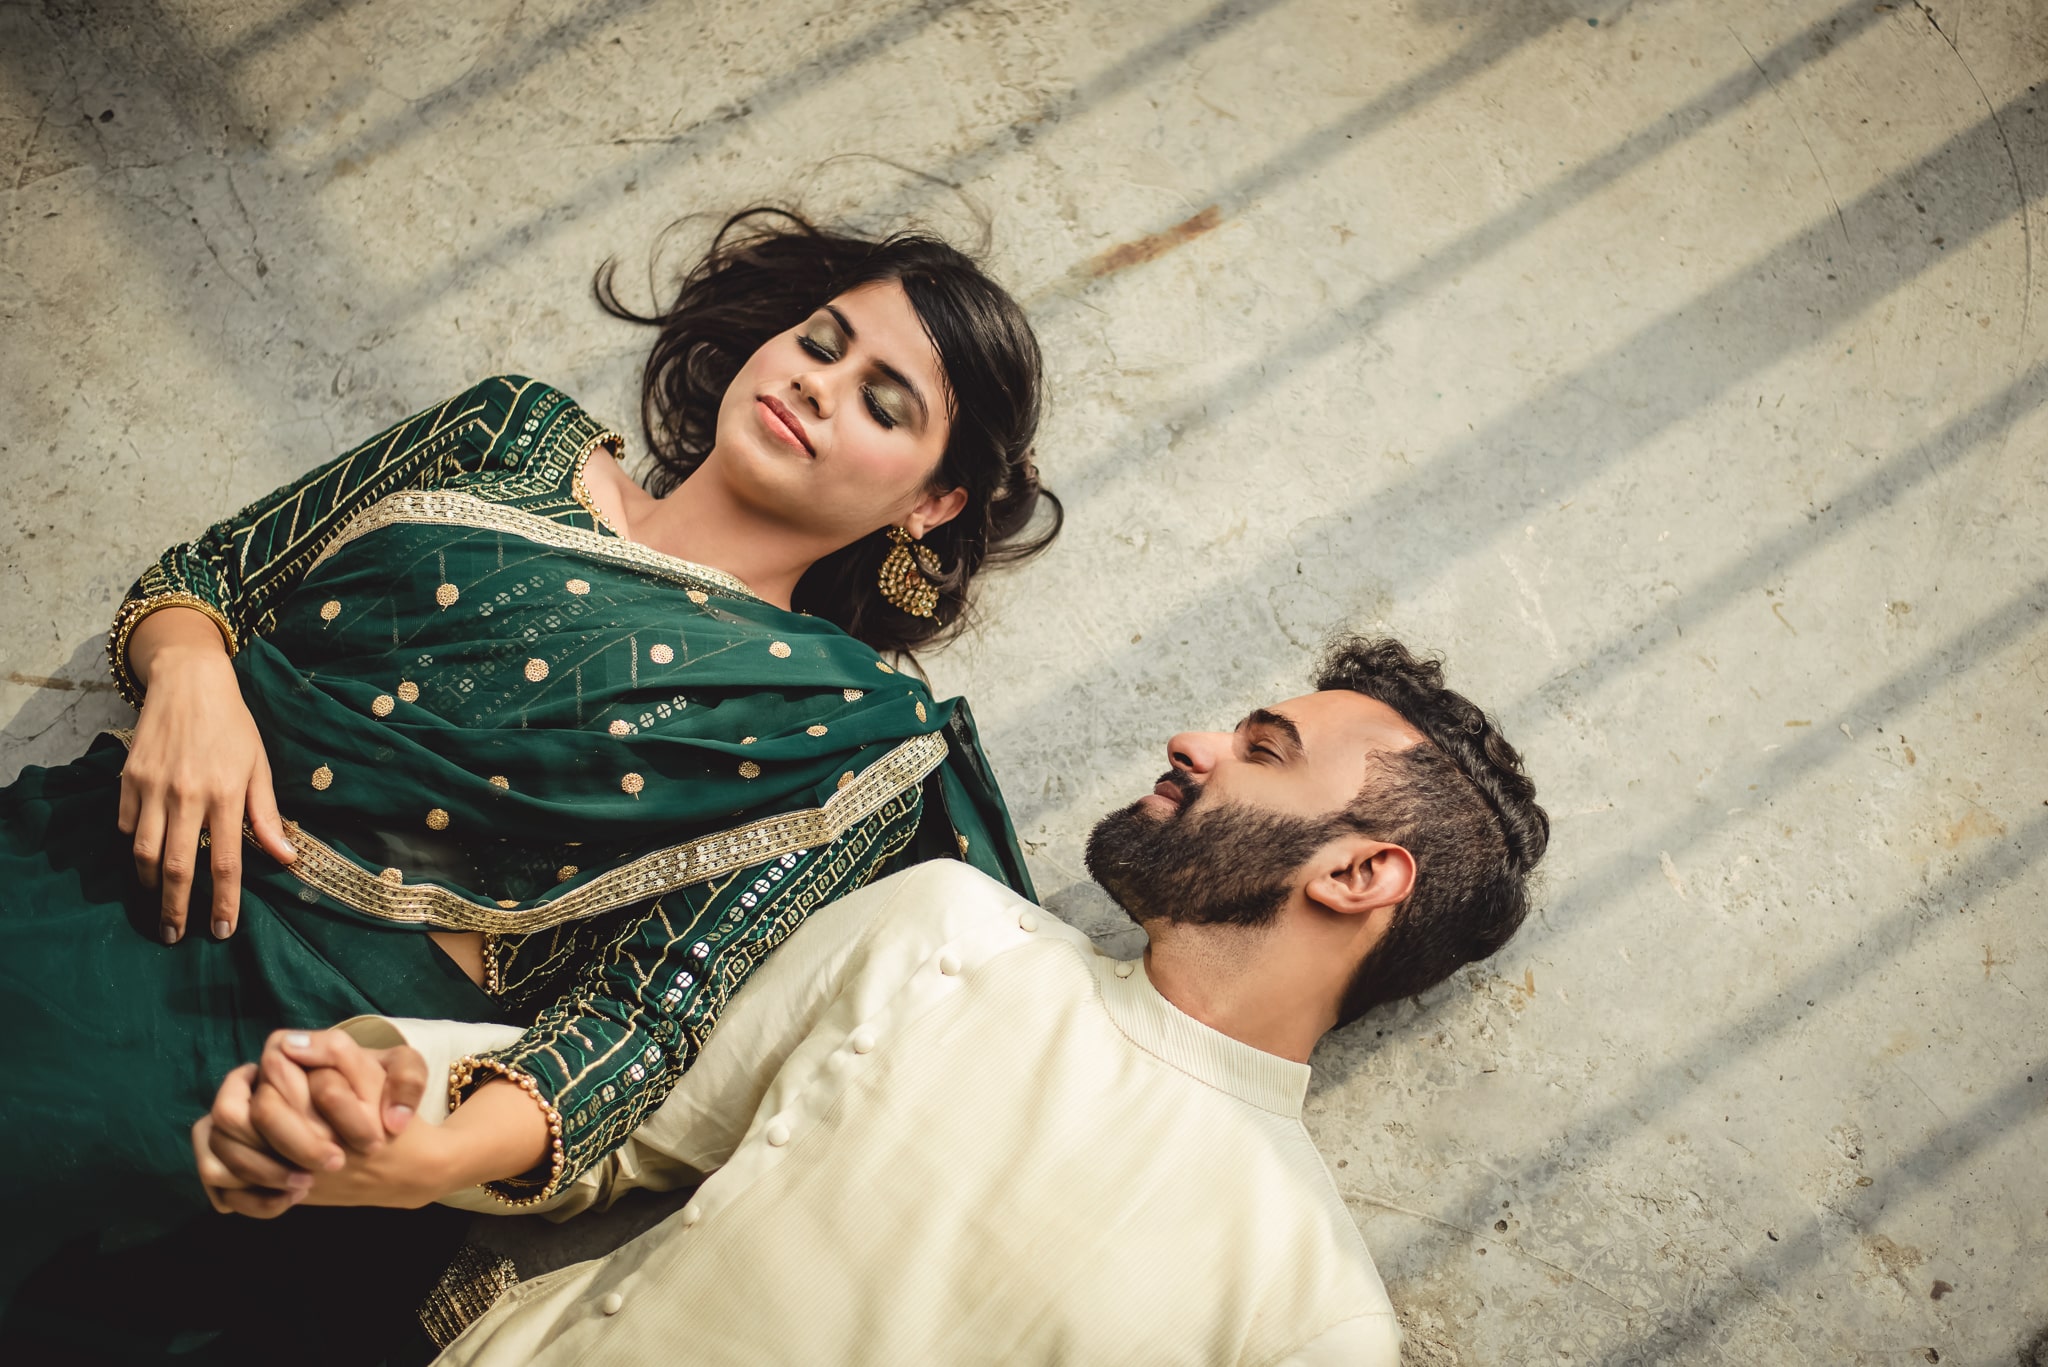 Punjabi Pre Wedding Film | Shot in Ludhiana, Punjab Jasmeet & Ramanpreet  @tirath_singh0909 MUA : @khushbumakeovers 📸… | Instagram